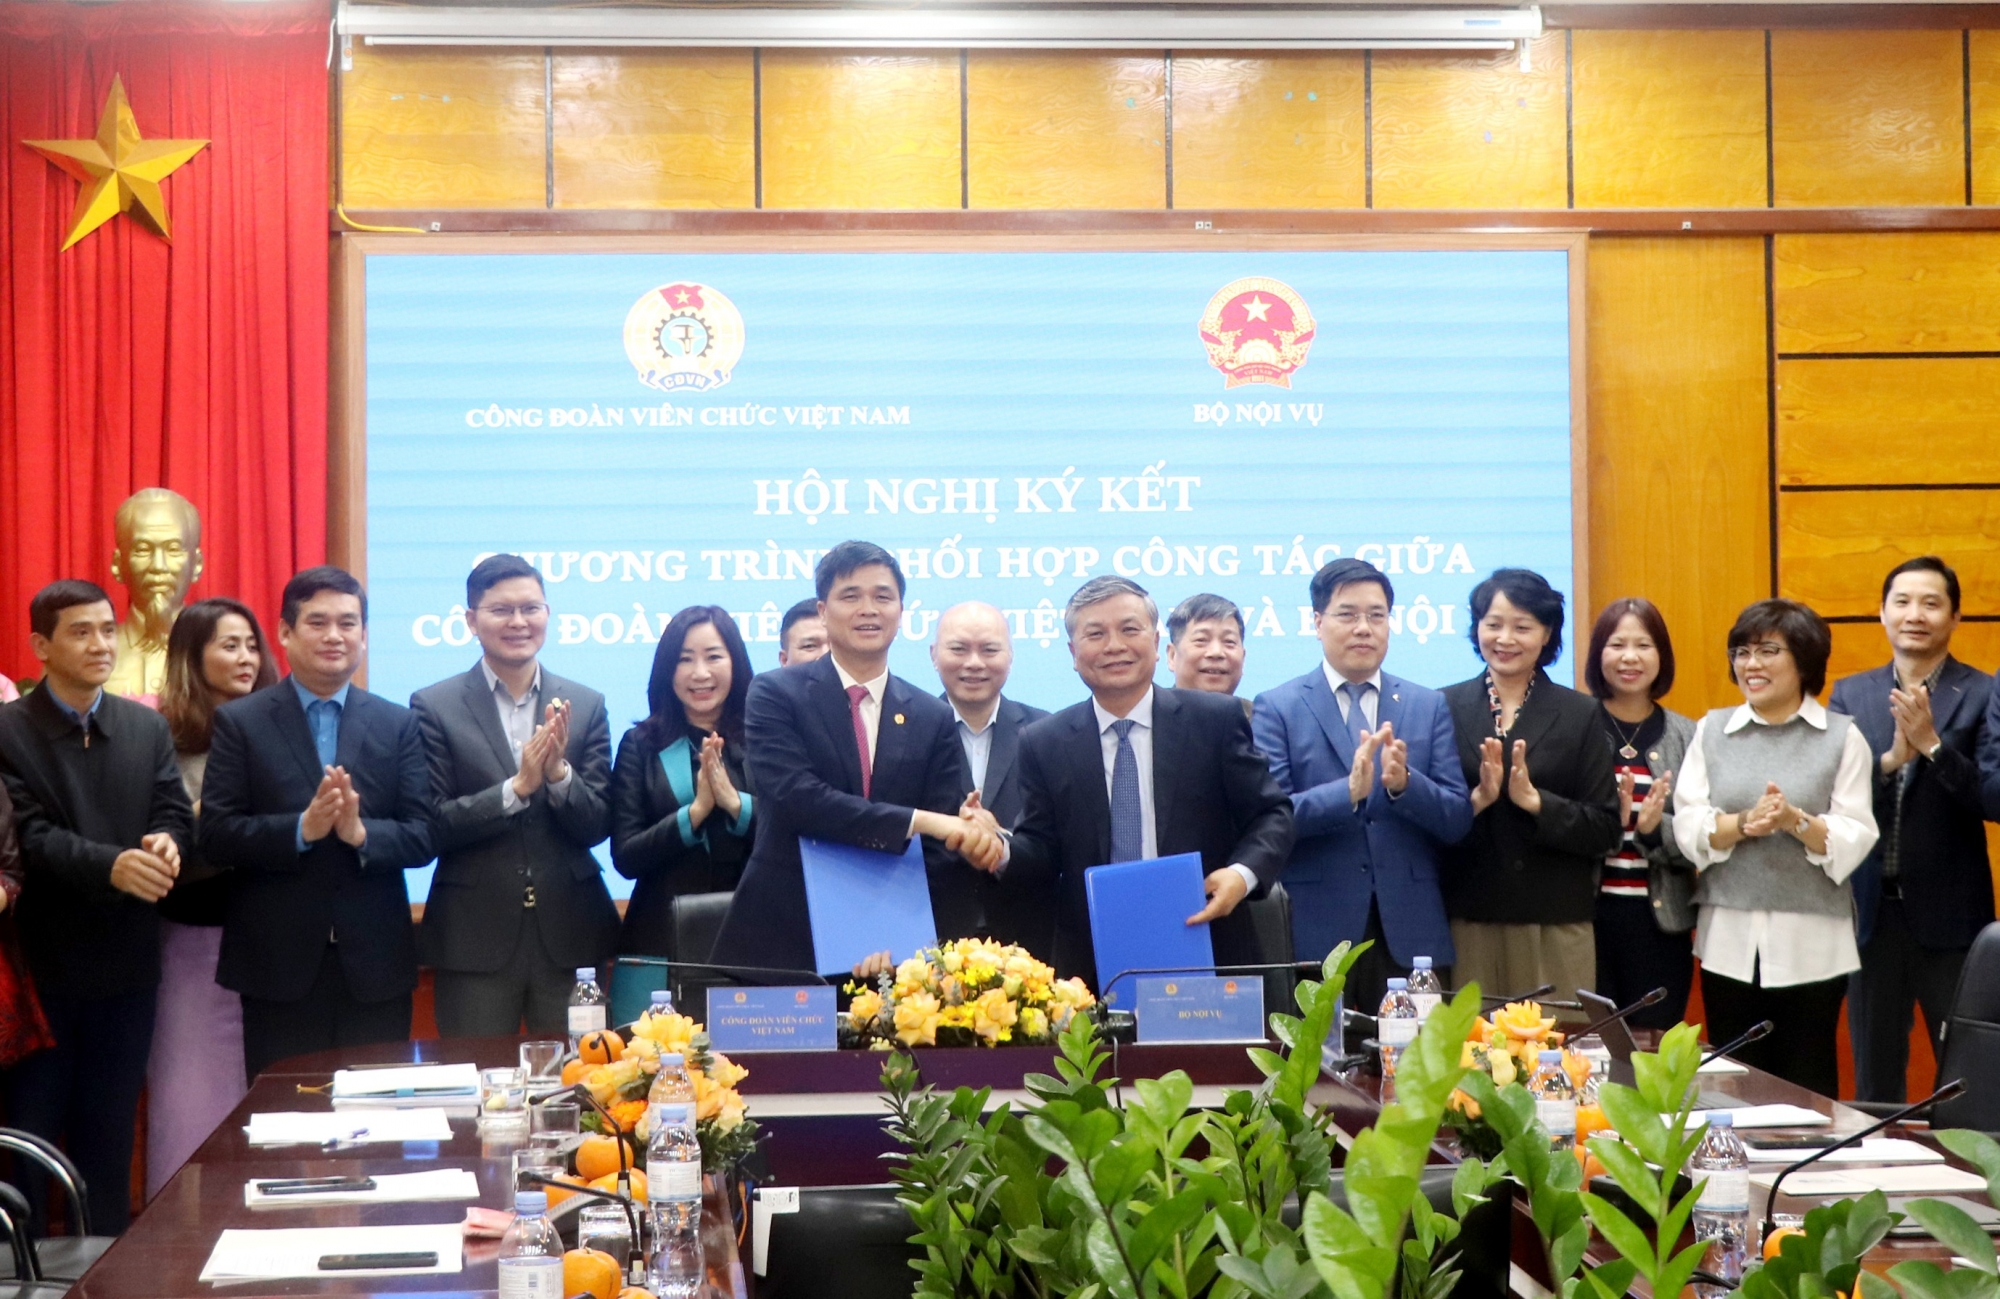 Công đoàn Viên chức Việt Nam và Bộ Nội vụ ký kết kế hoạch phối hợp công tác cải cách hành chính năm 2024